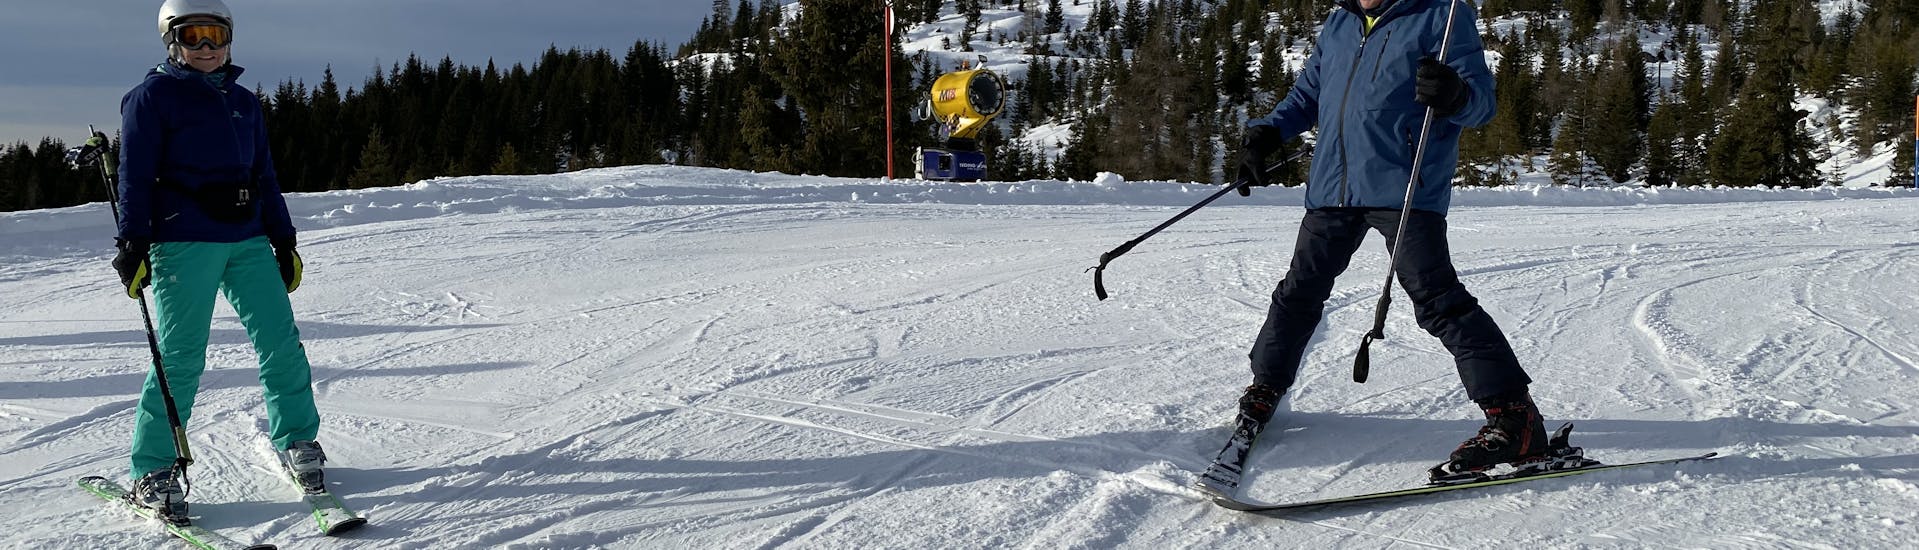 Zwei Skifahrer genießen die Pisten der Tauplitz beim Privaten Skikurs für Erwachsene für alle Levels.